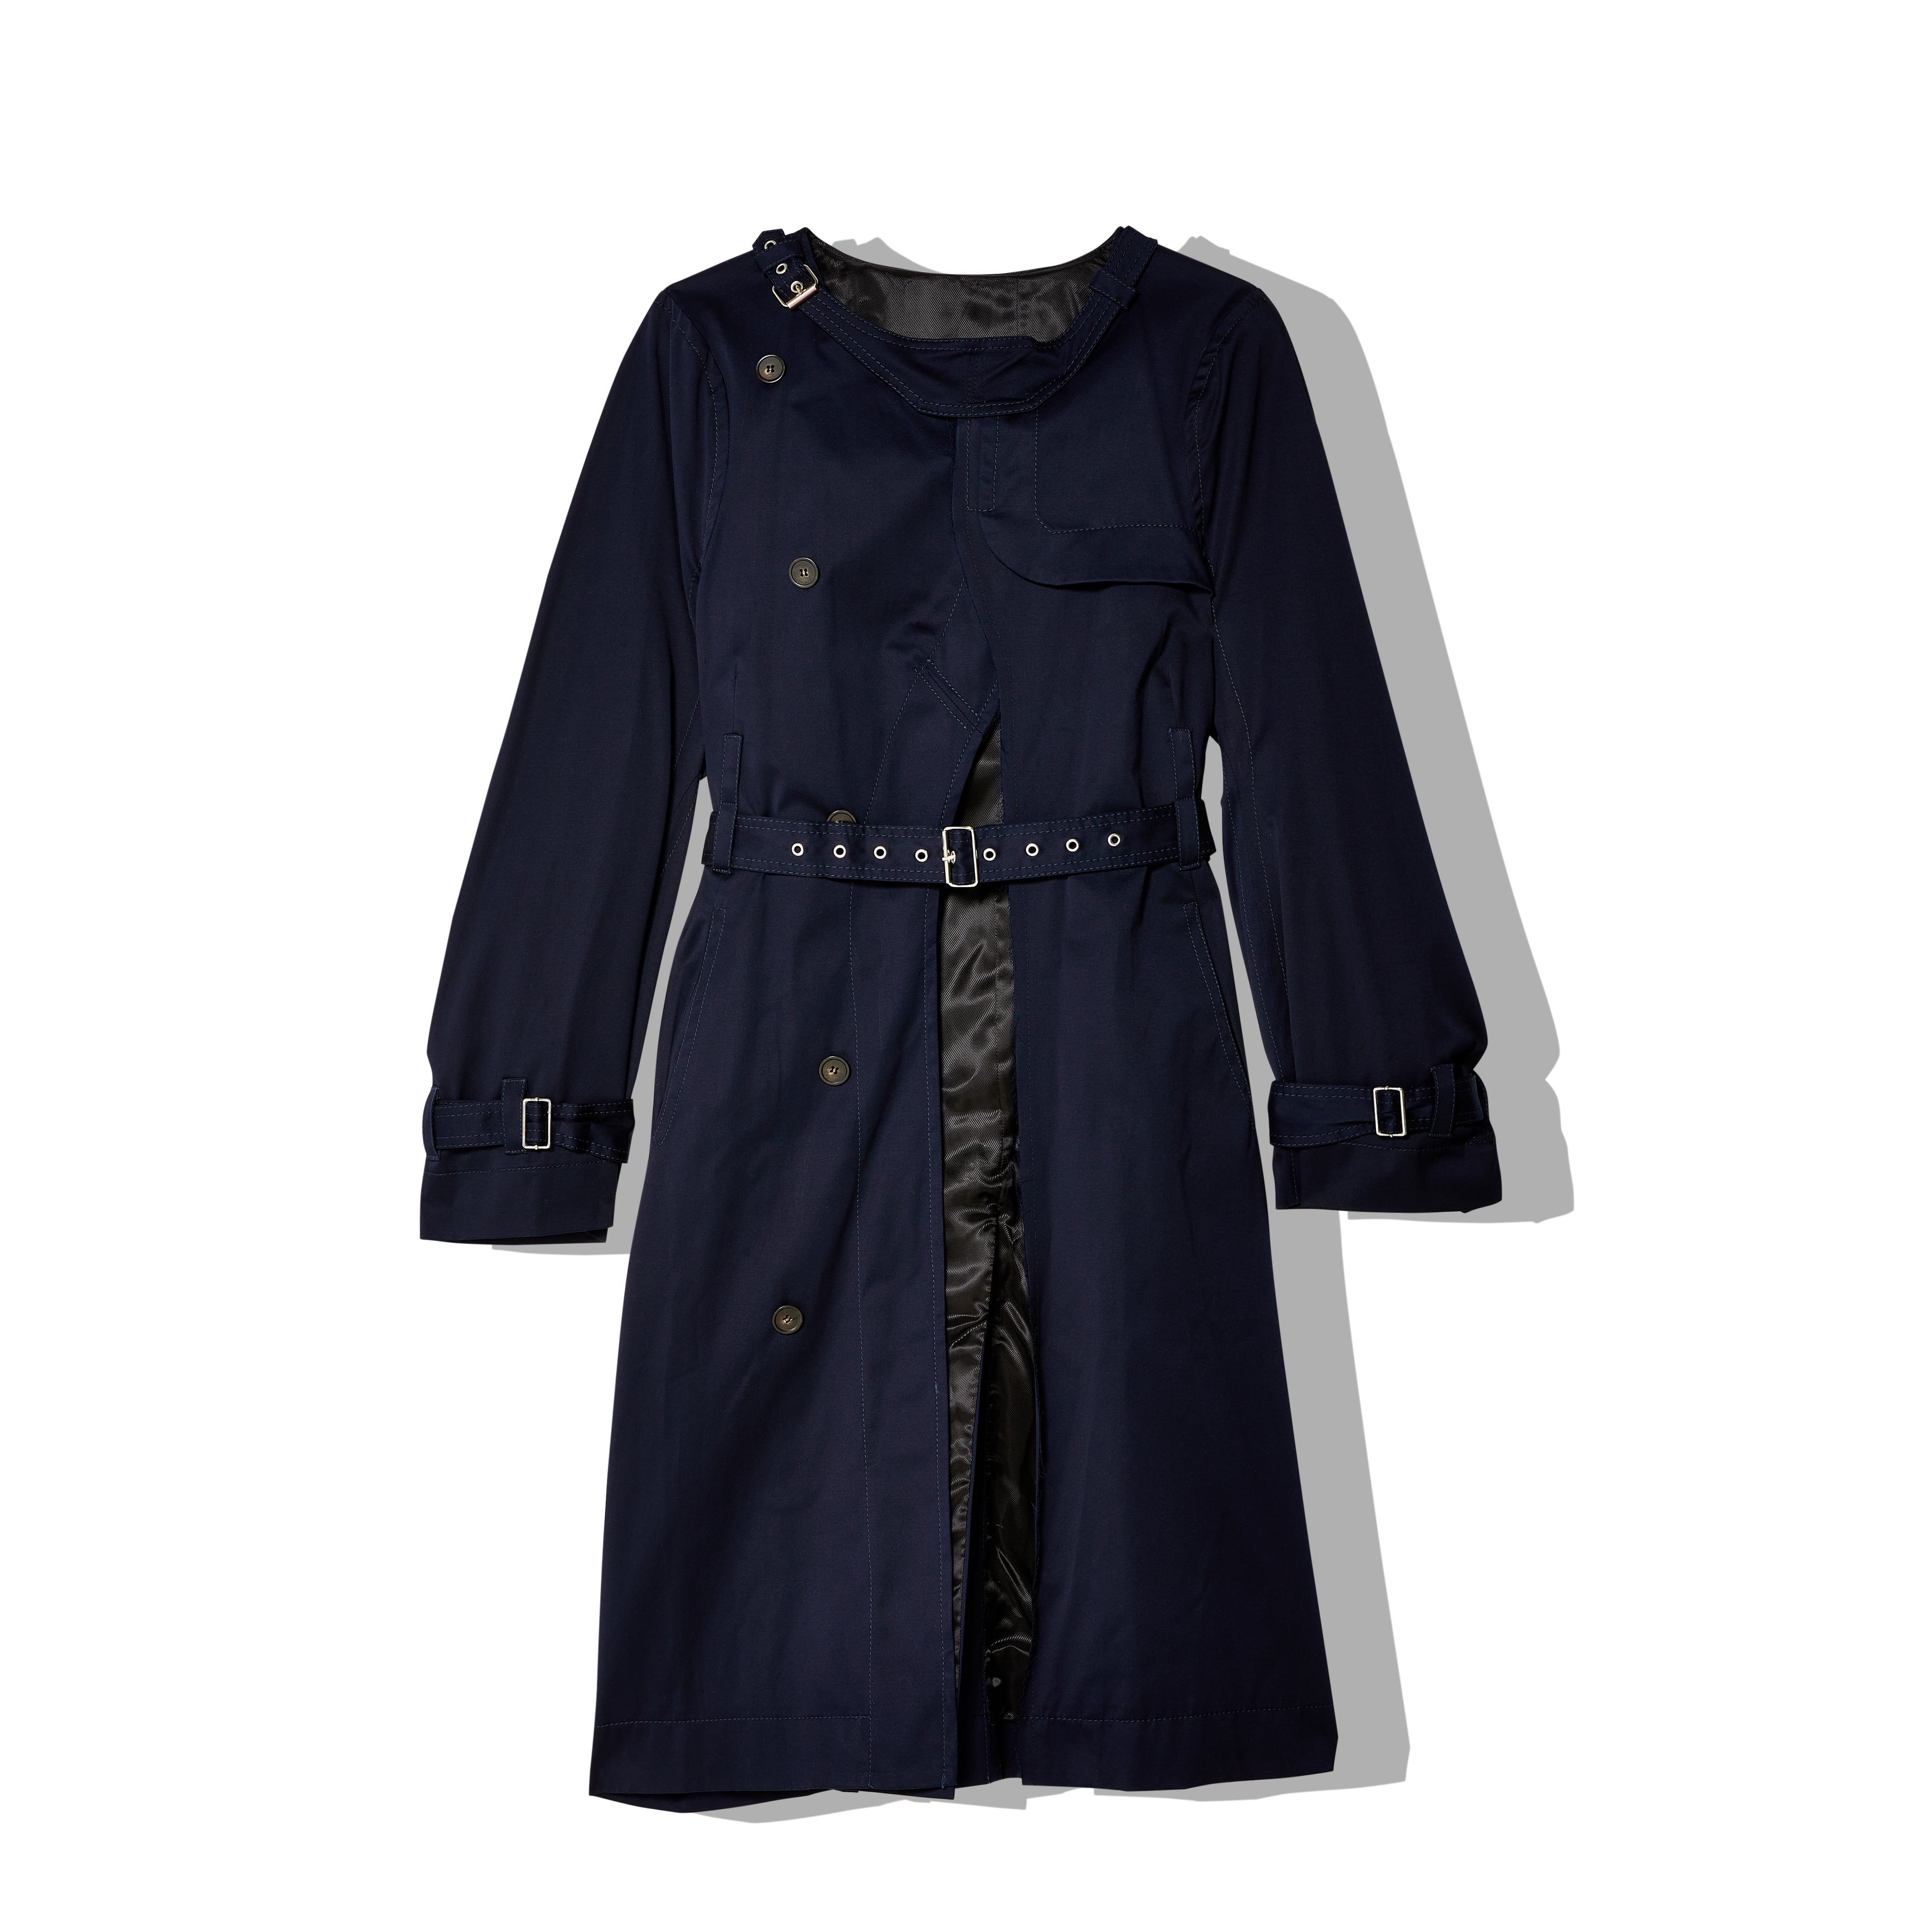 Marina Yee - Women's Cardigan Trench Coat - (Navy) – DSMNY E-SHOP